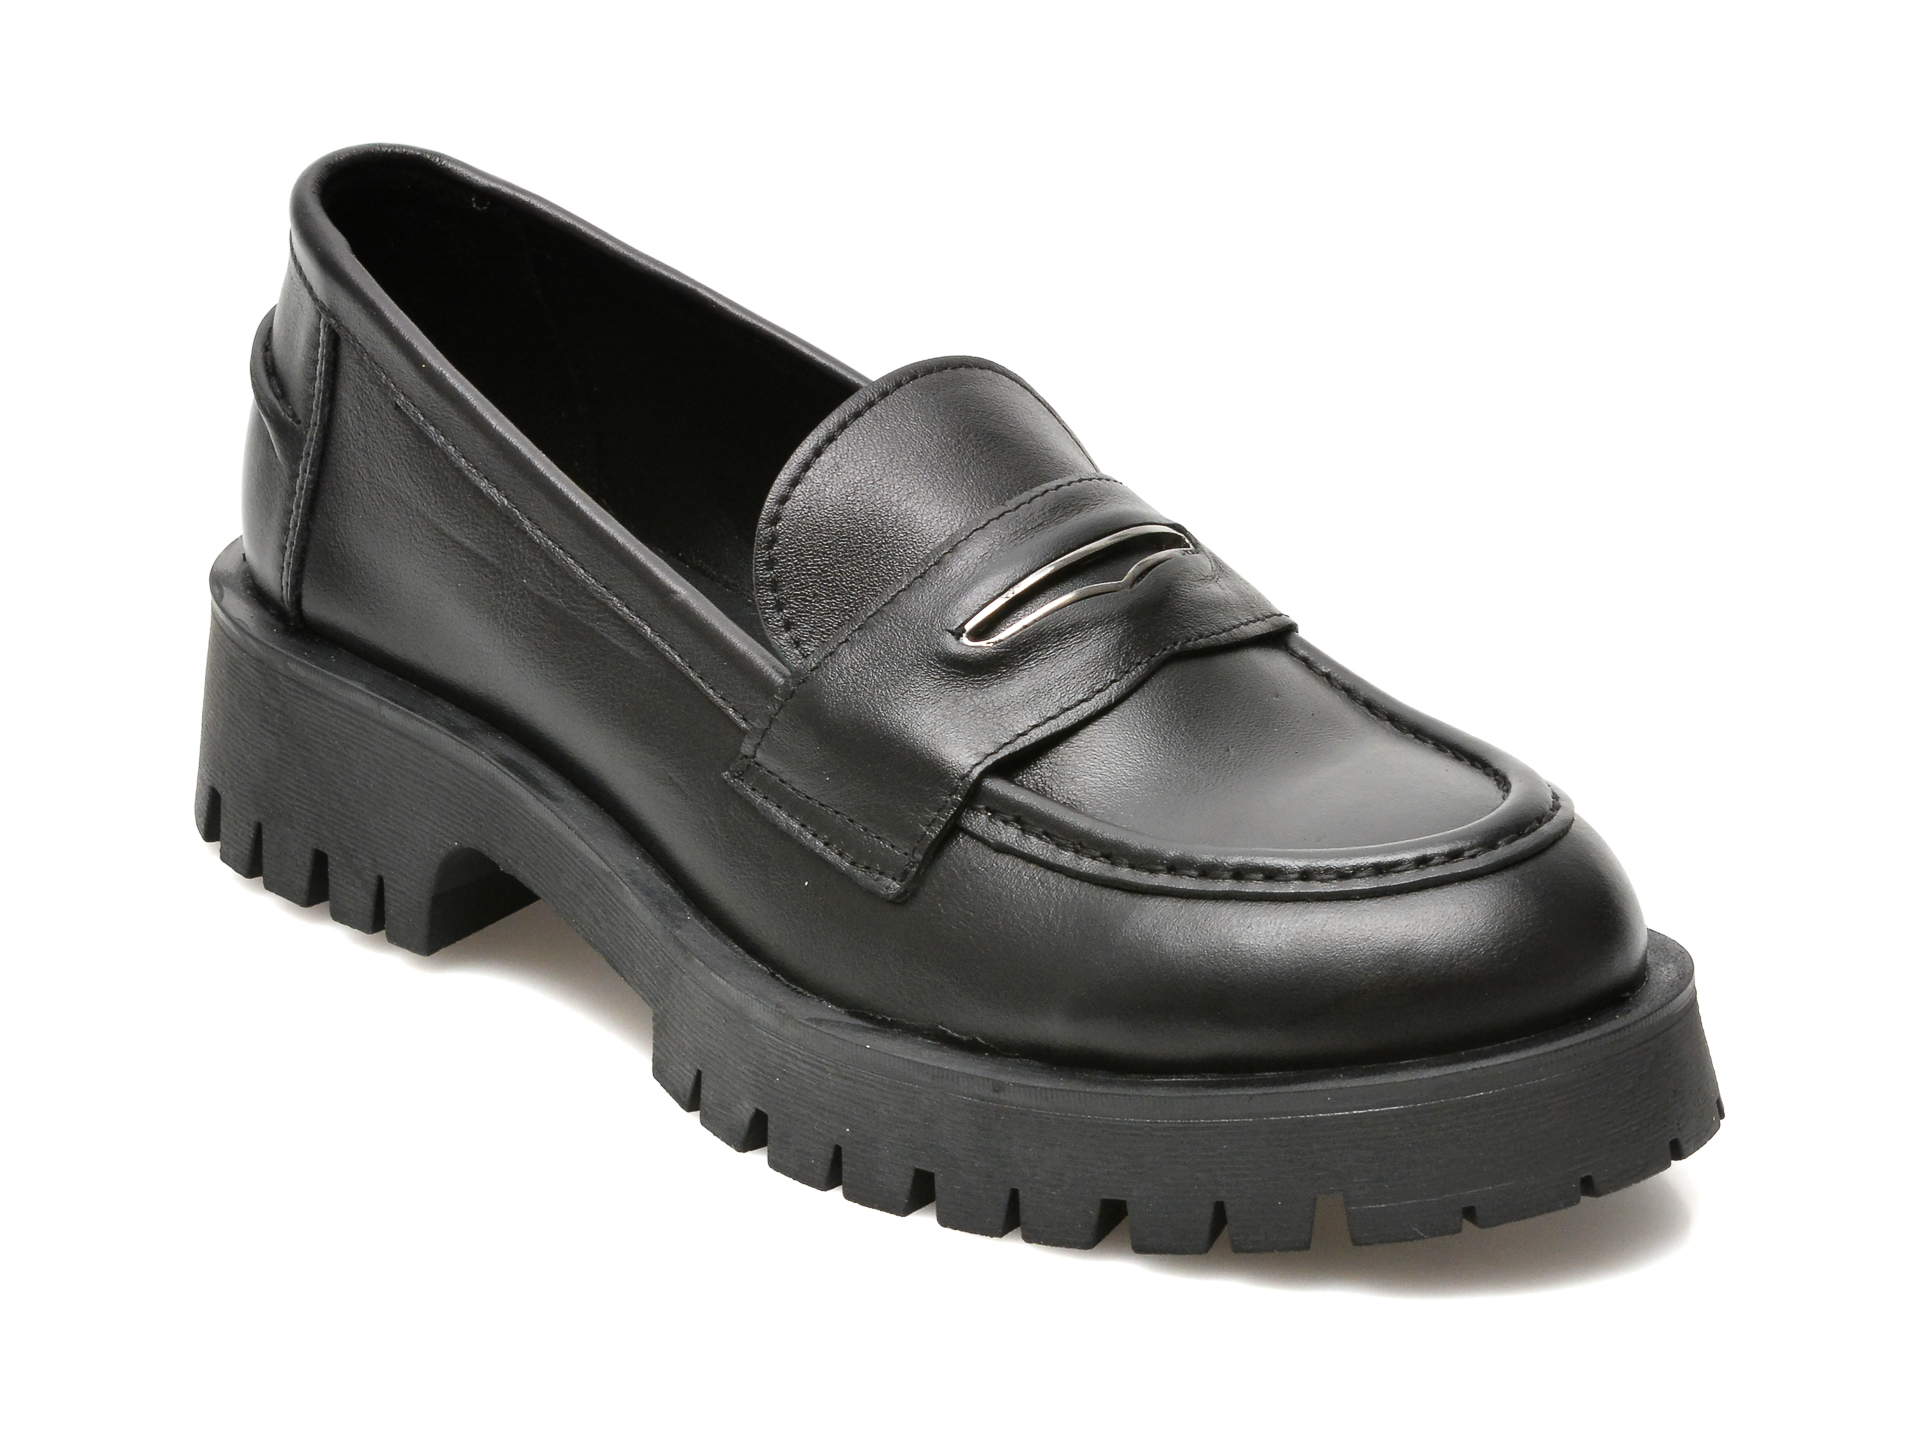 Pantofi SAVINO negri, 180, din piele naturala Savino imagine noua